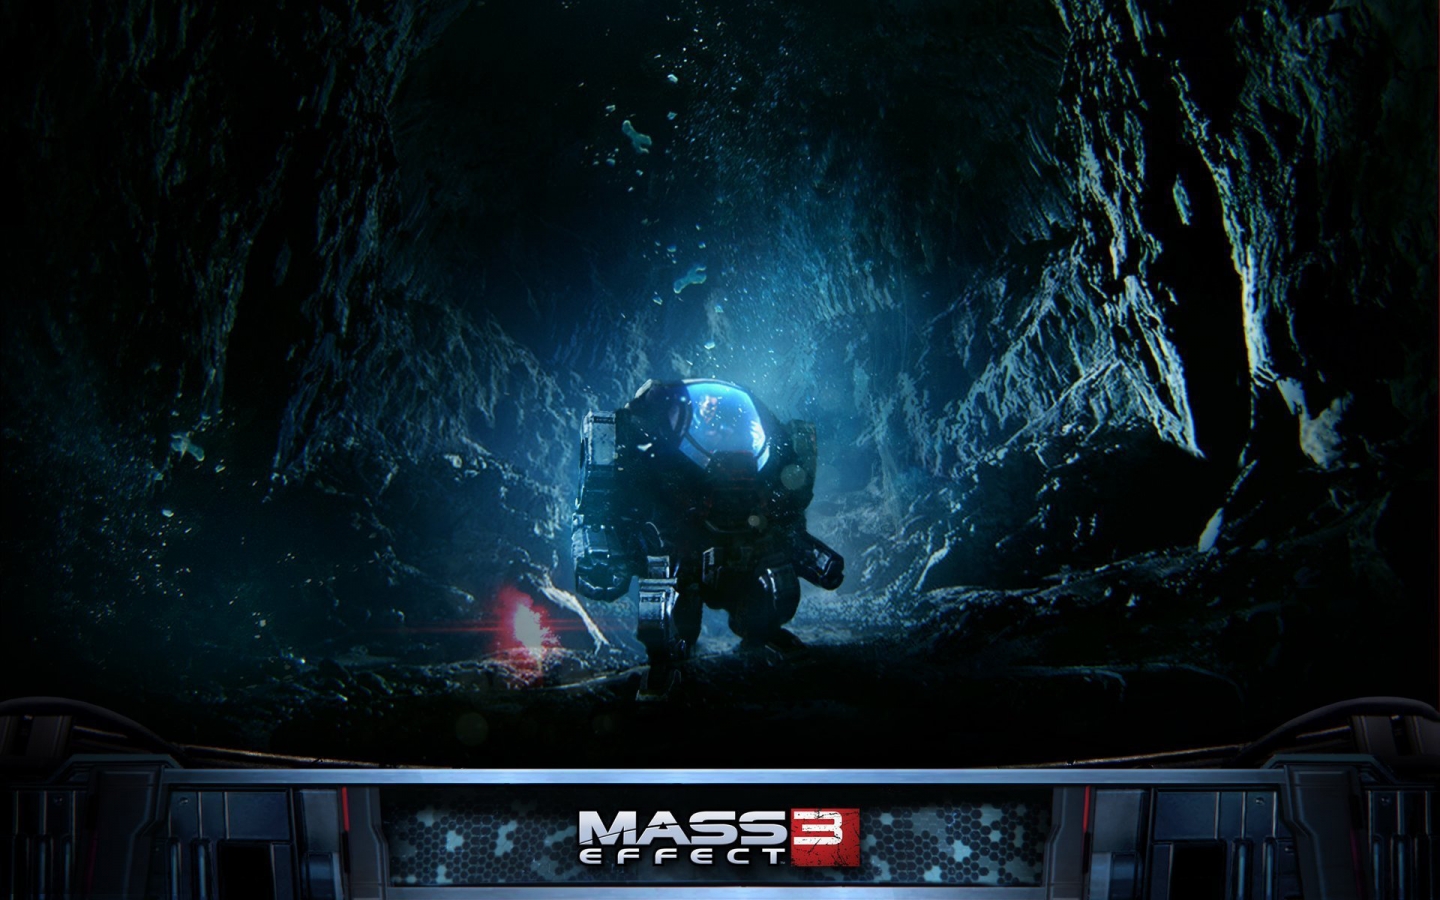 Mass Effect 3 Robot for 1440 x 900 widescreen resolution